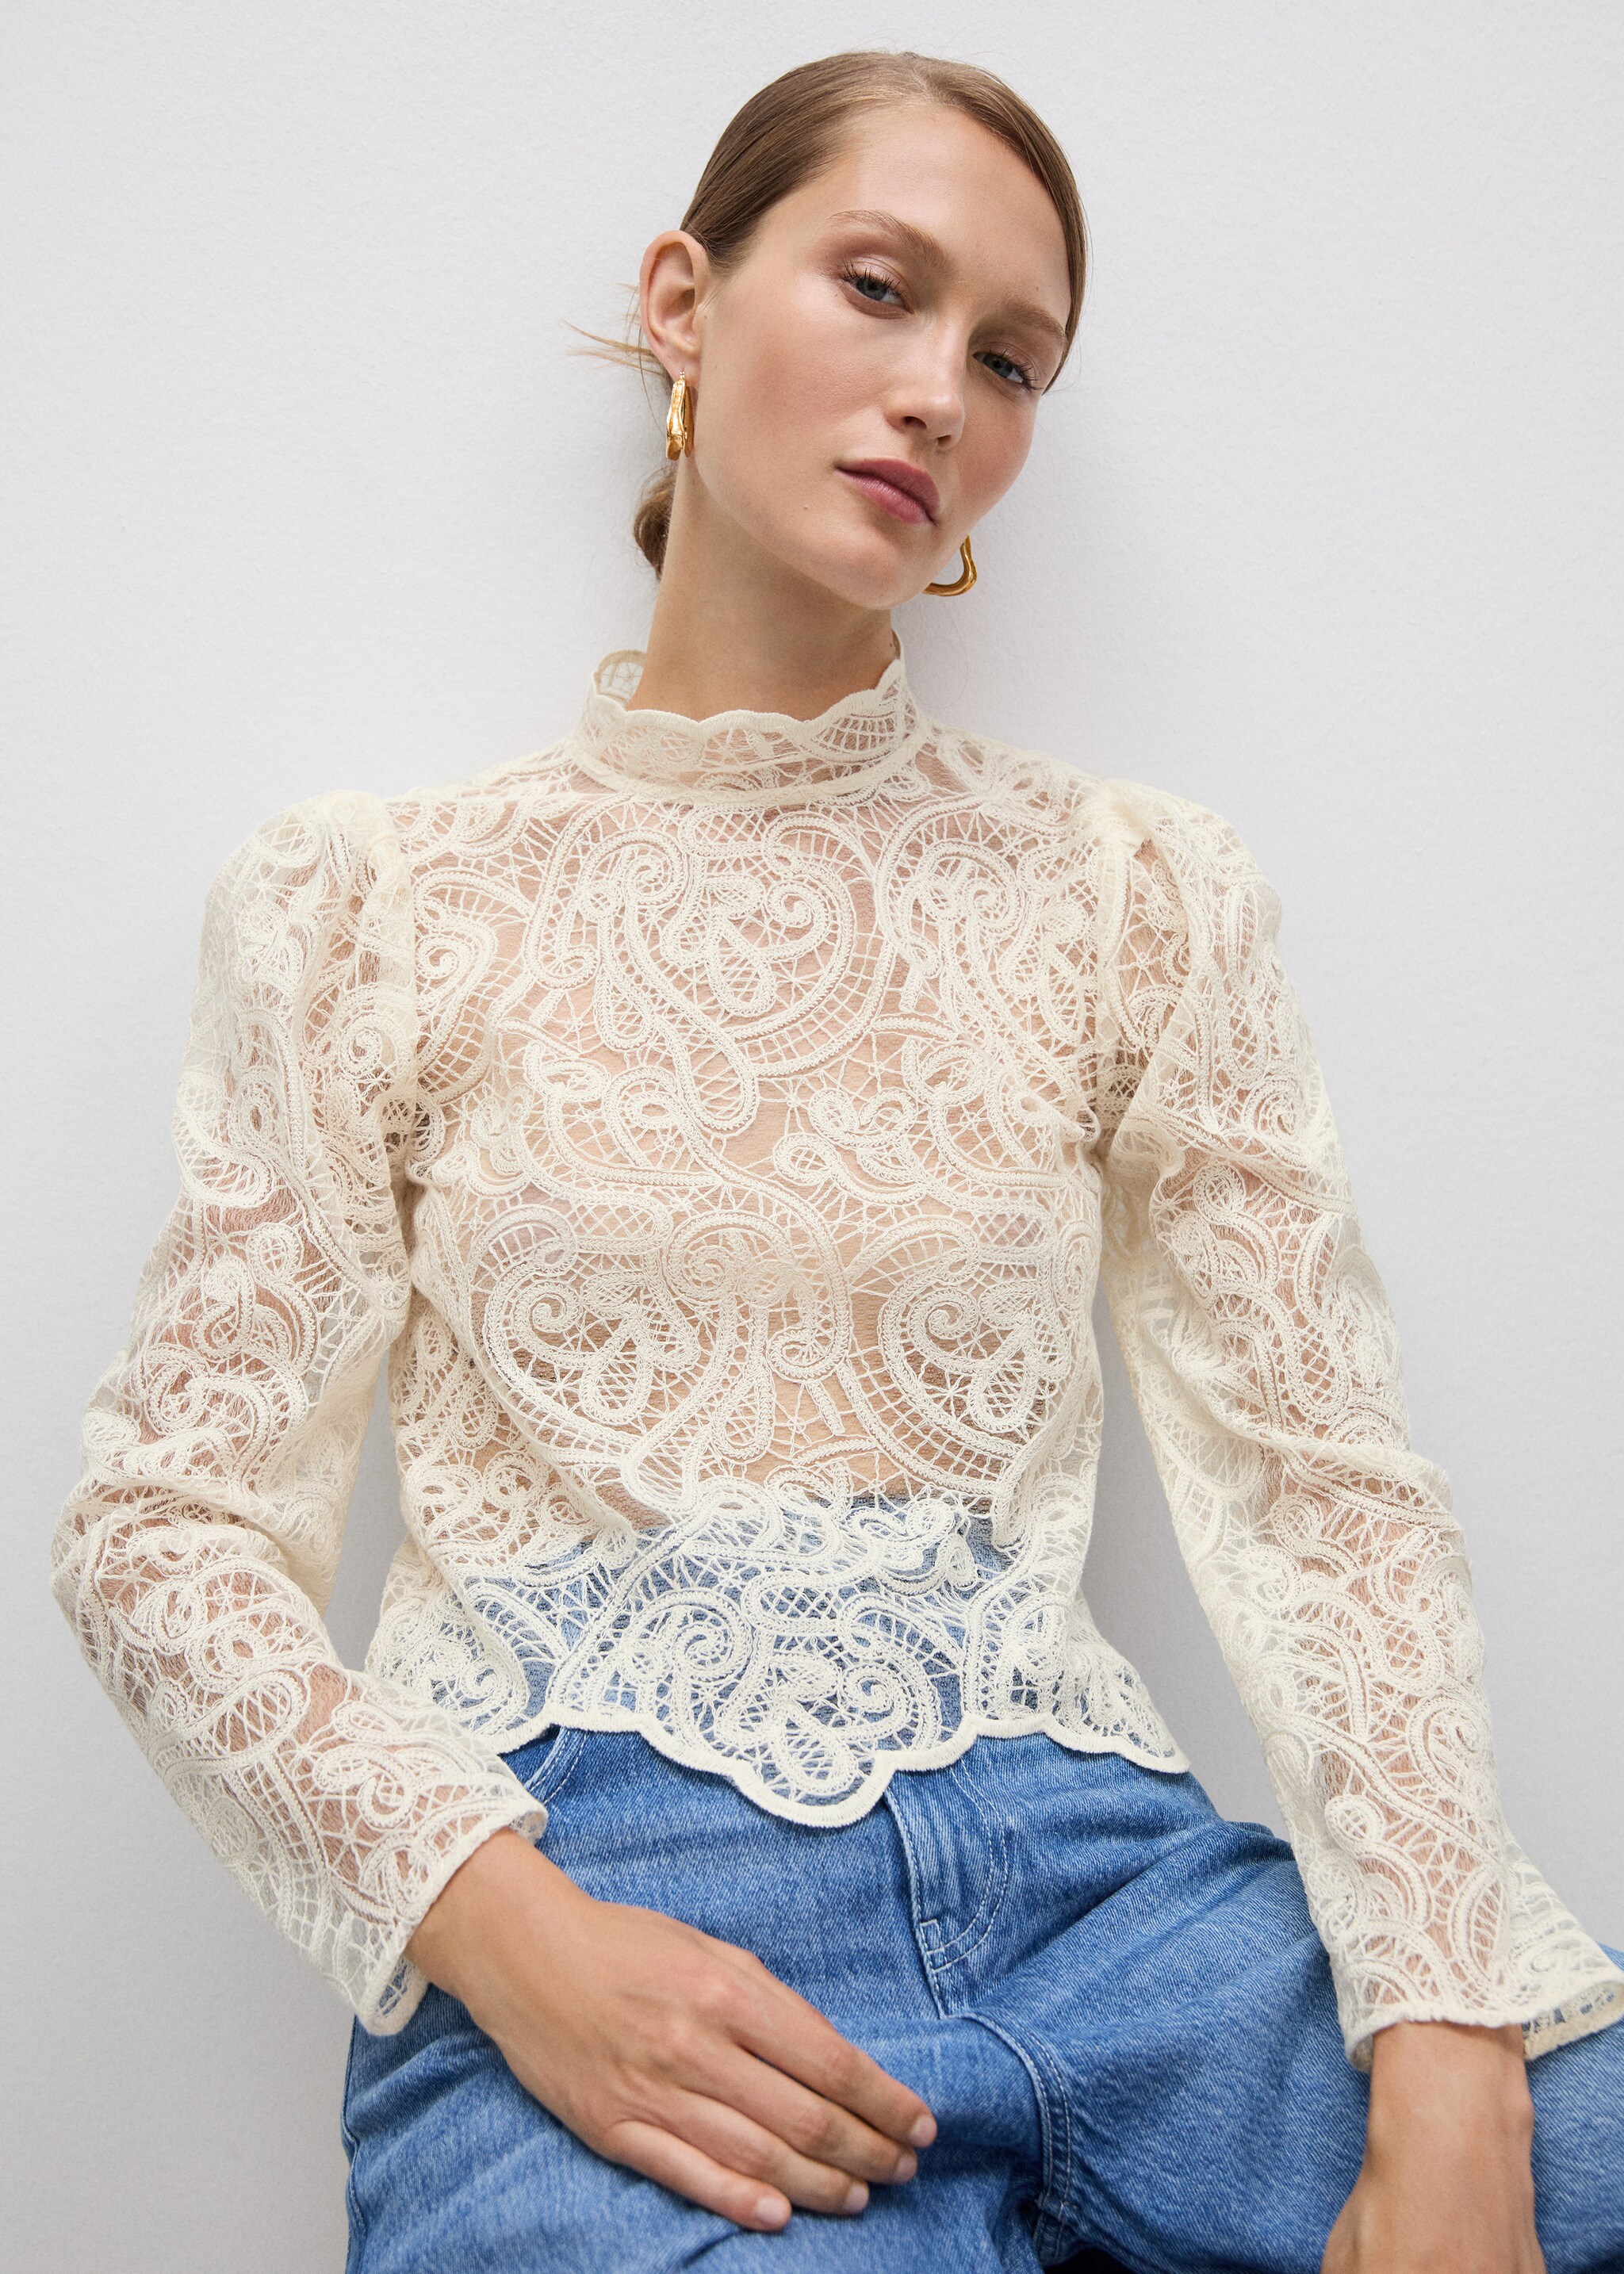 High-neck cotton lace blouse - Medium plane